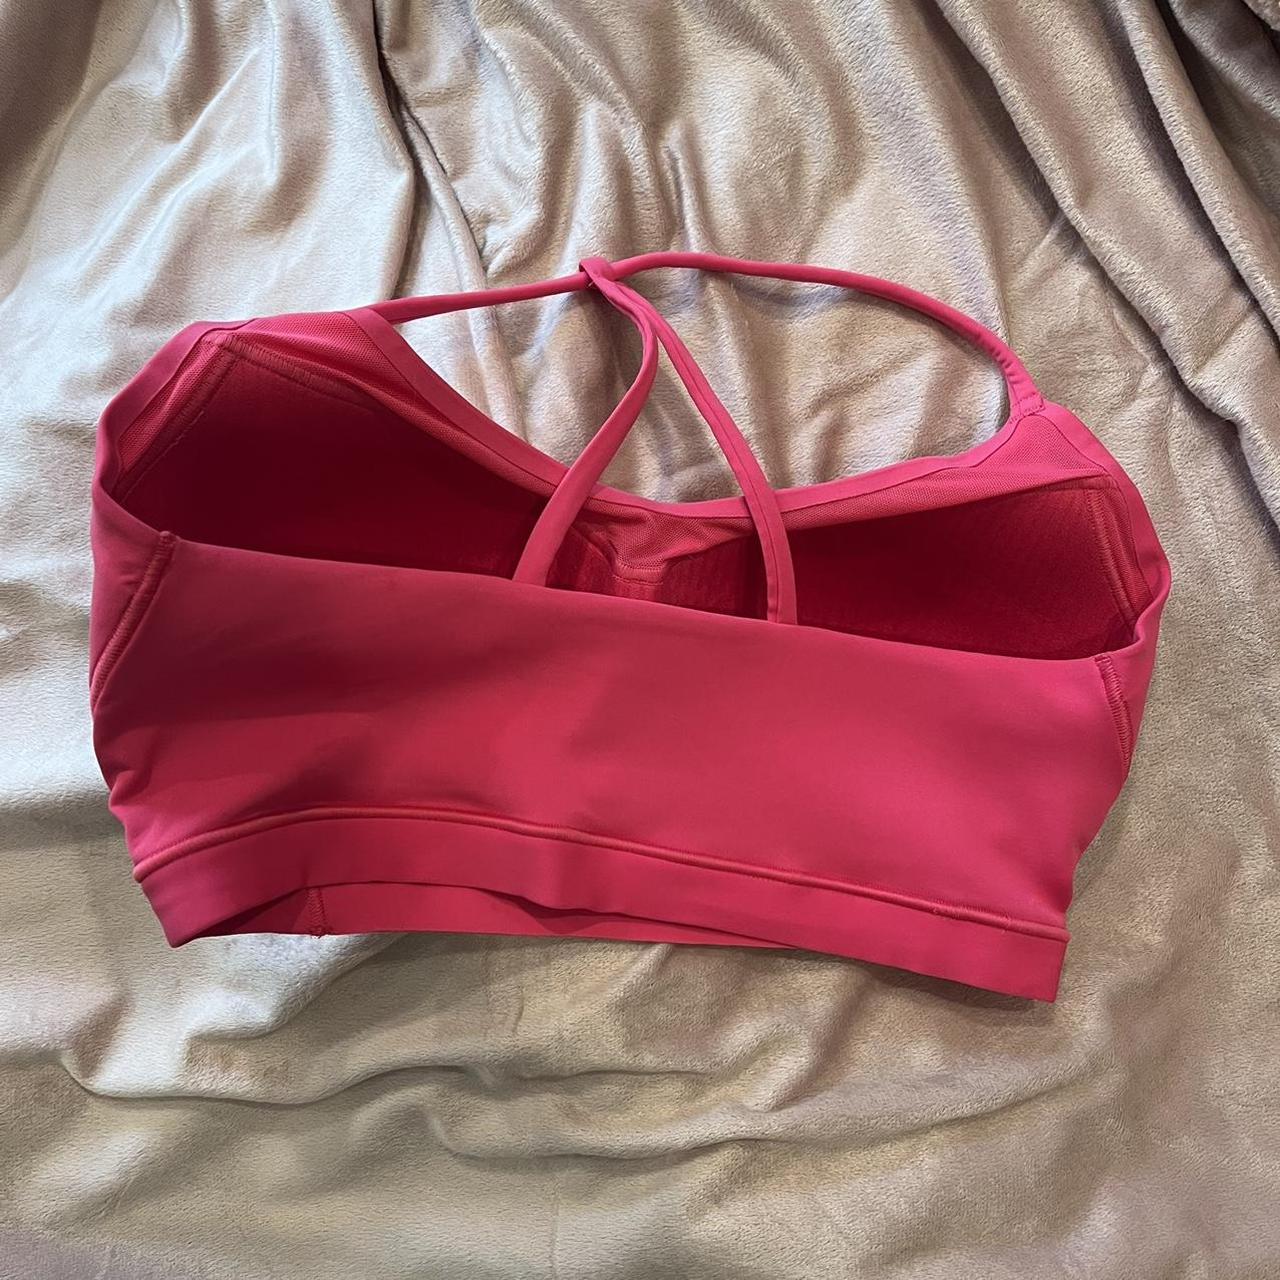 gymshark studio sports bra in hibiscus pink, did not - Depop